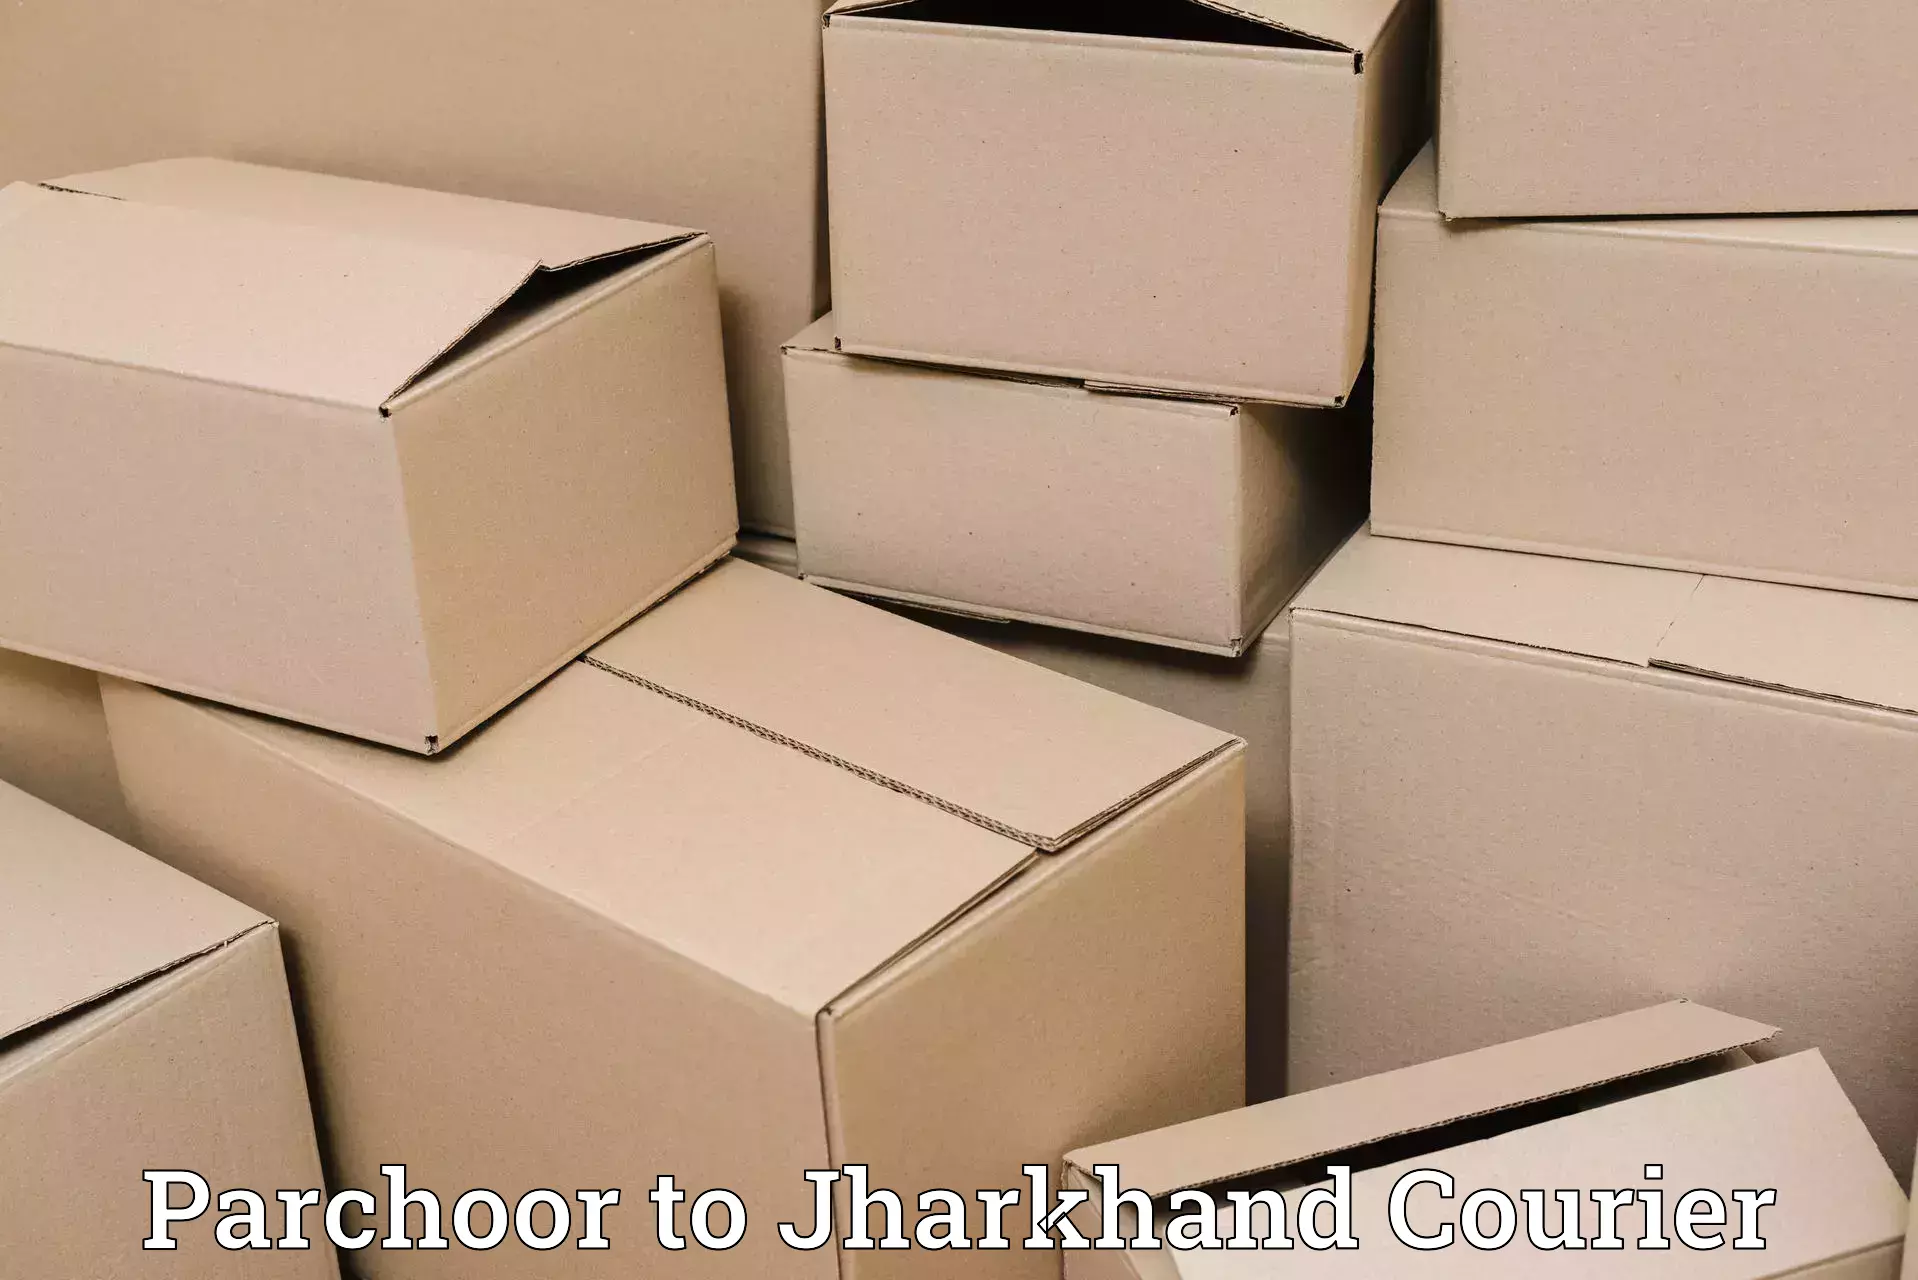 Smart parcel tracking in Parchoor to IIIT Ranchi